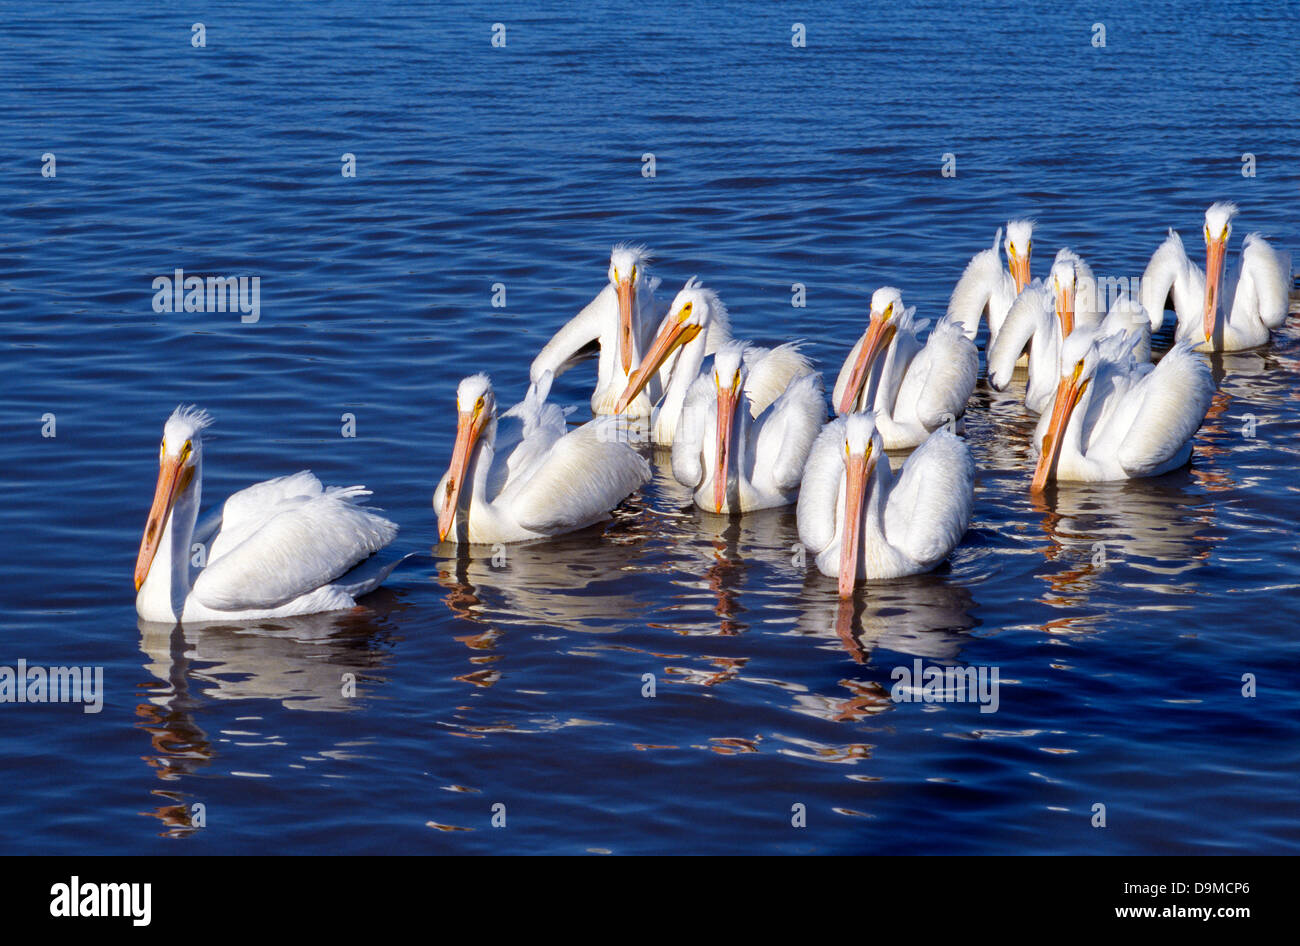 Un piccolo gregge di American pellicani bianchi noti per le loro bollette colorati nuotano insieme nelle acque blu della Baia di Galveston in Harris County, Texas, Stati Uniti d'America. Foto Stock